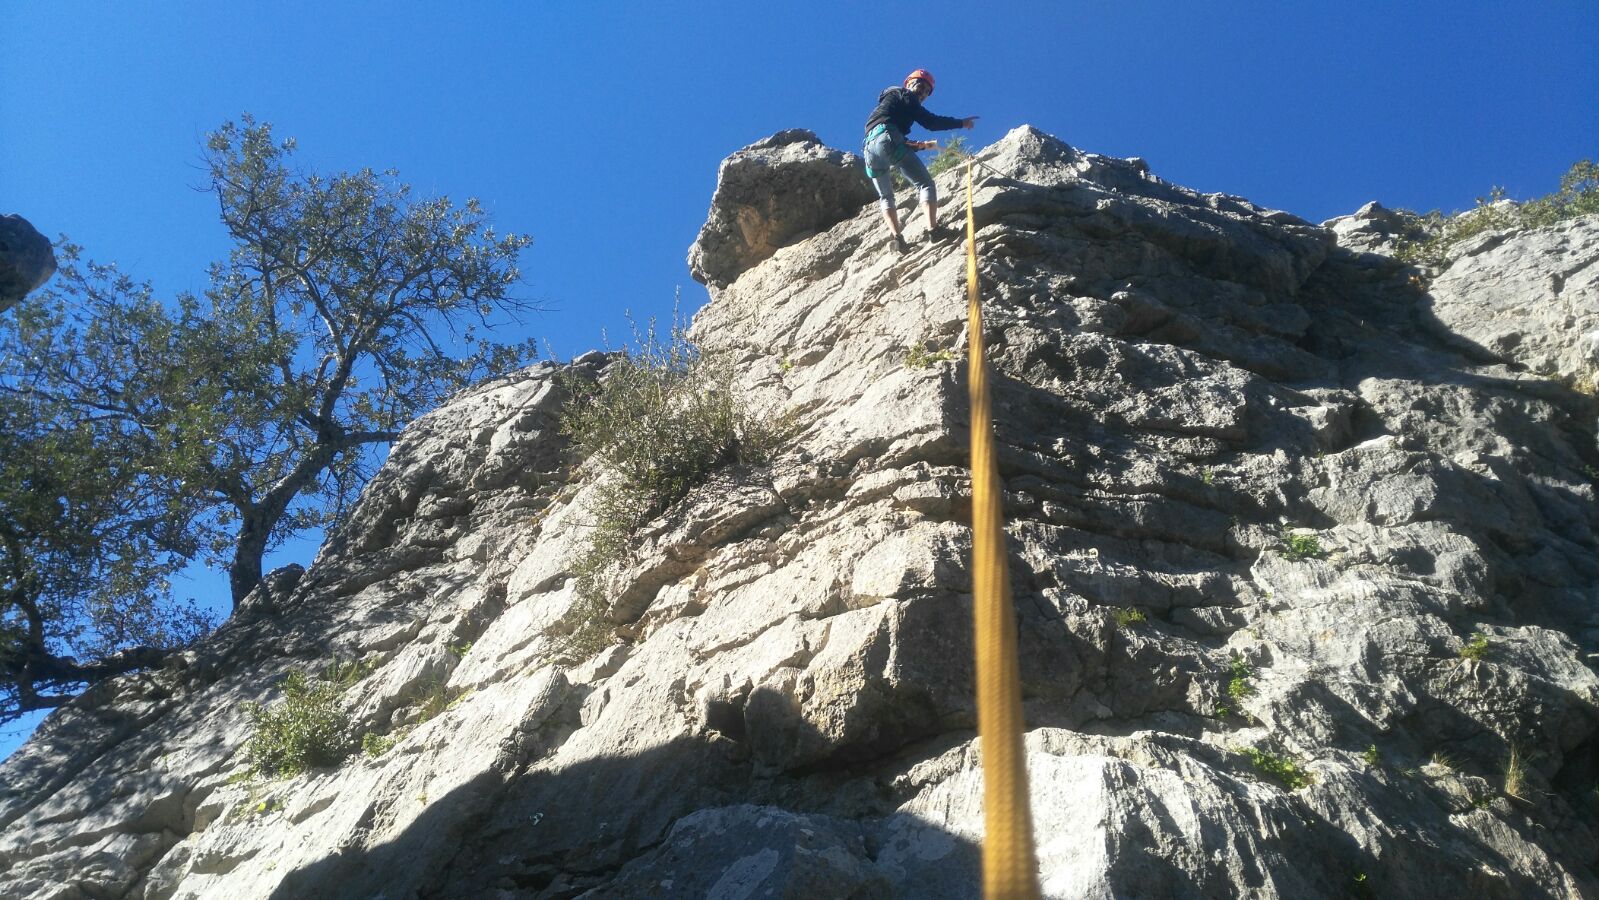 Persona Escalando en la Sierra de Cadiz